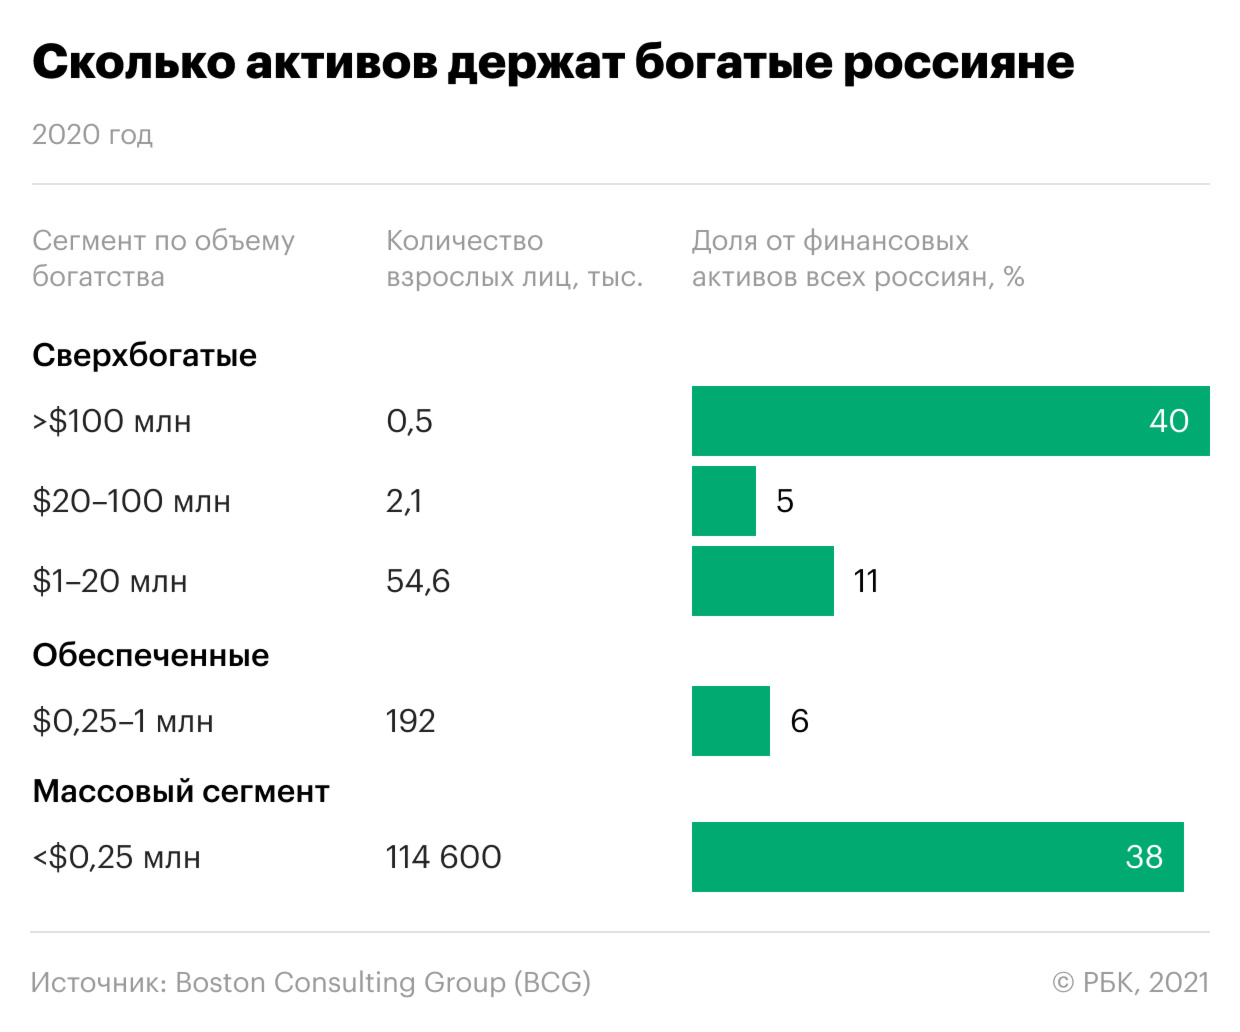 Эксперты оценили стоимость активов 500 «сверхбогатых» россиян